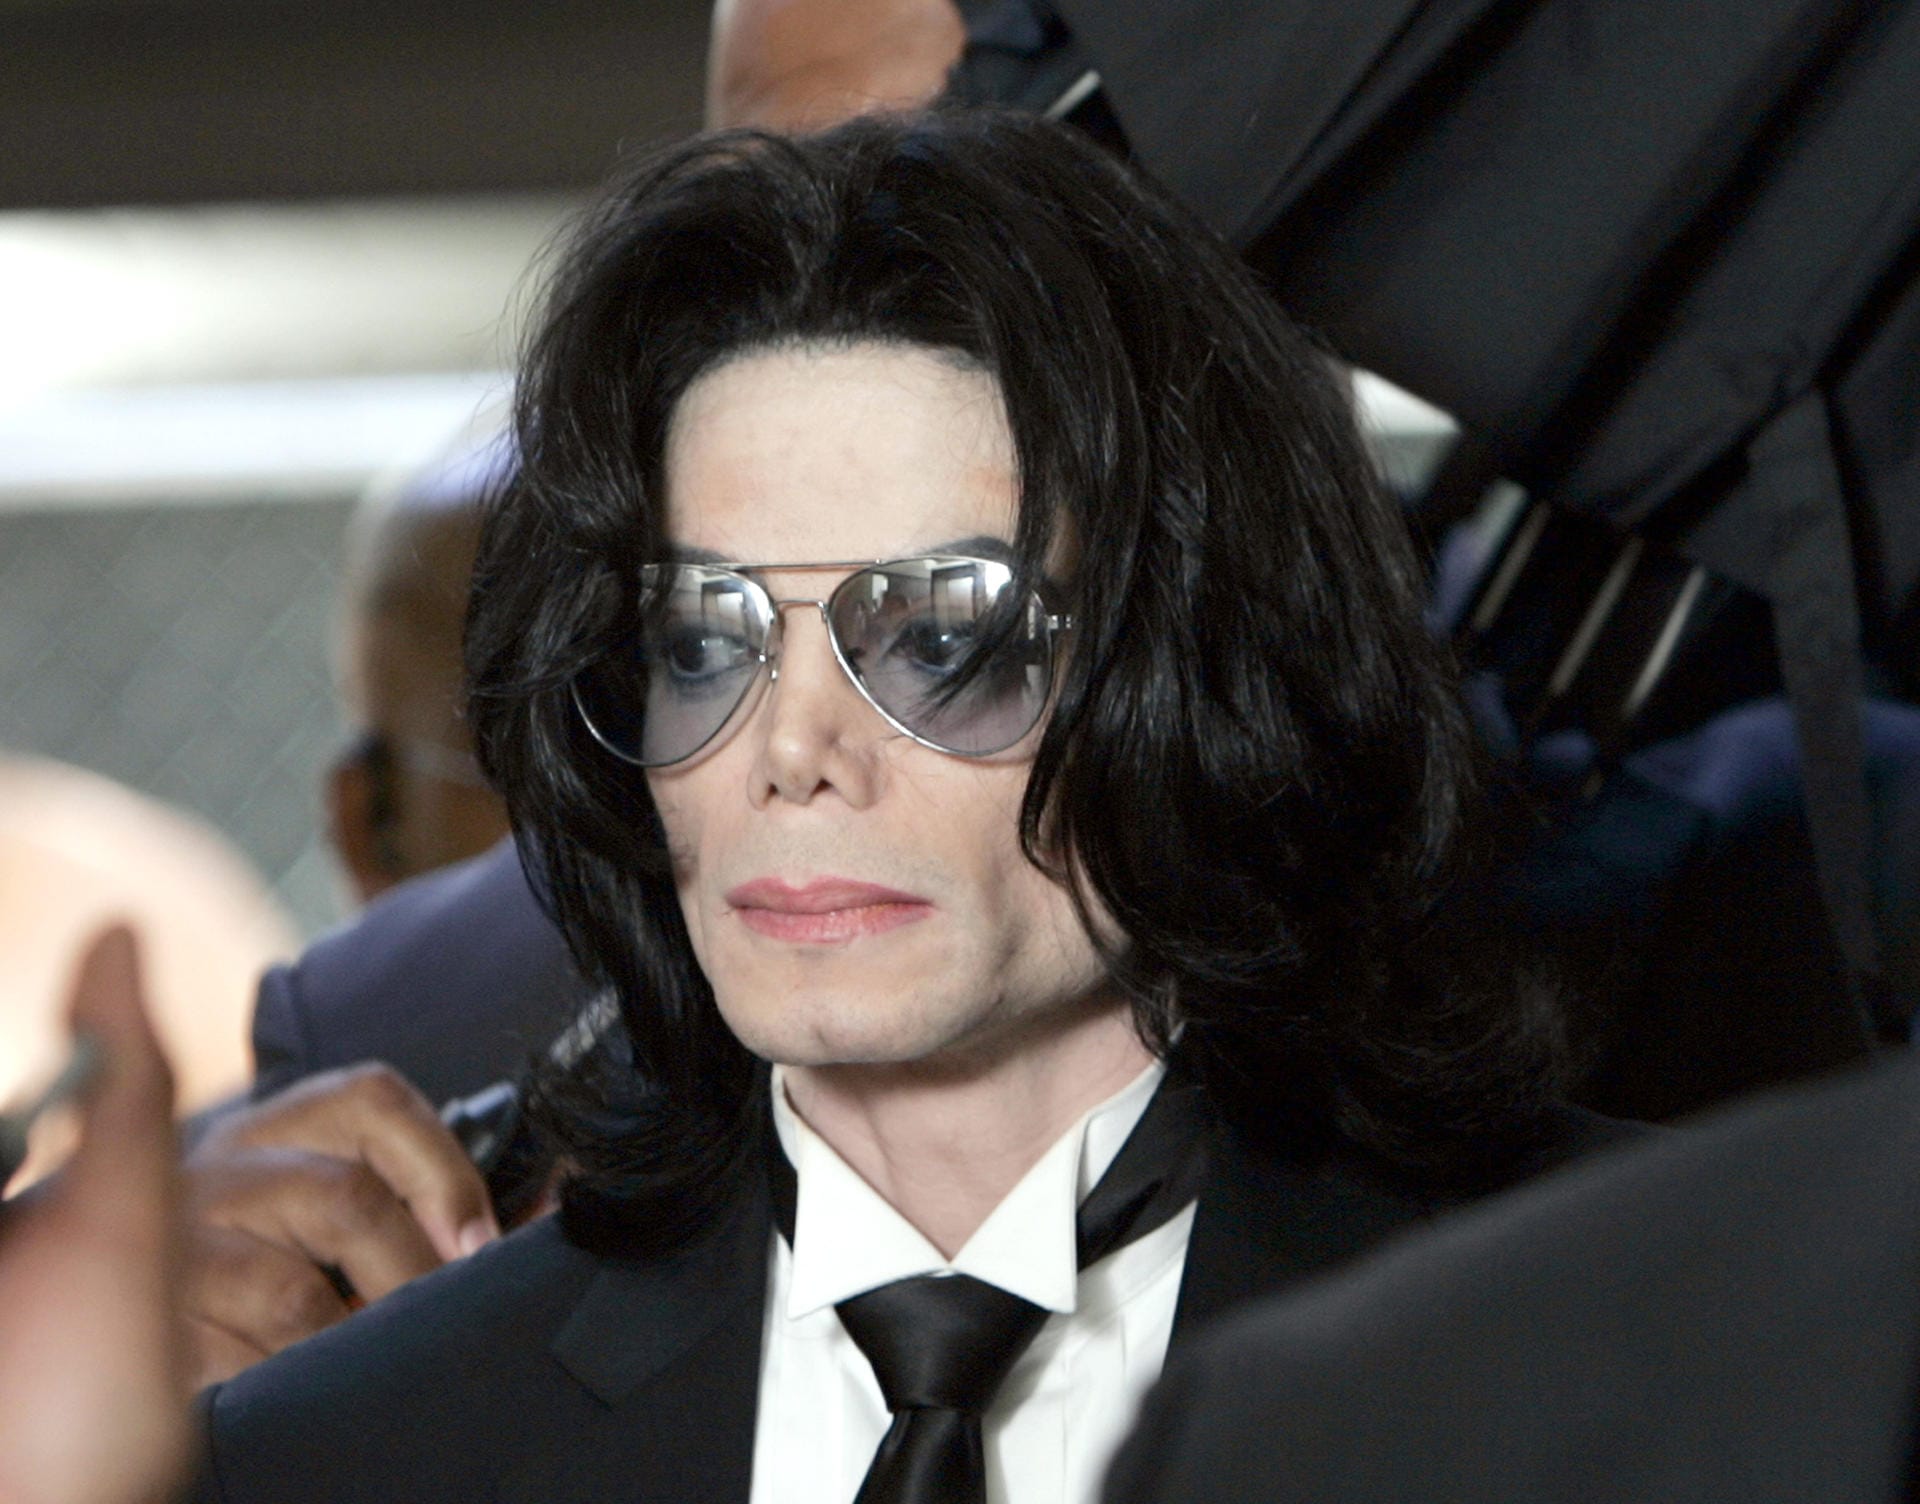 Juni 2005: Anfang 2005 beginnt der Gerichtsprozess gegen Michael Jackson. Er soll sich 2003 an einem 13-Jährigen vergangen haben. Der Sänger wird in allen Anklagepunkten freigesprochen und verlässt das Gericht als freier Mann.